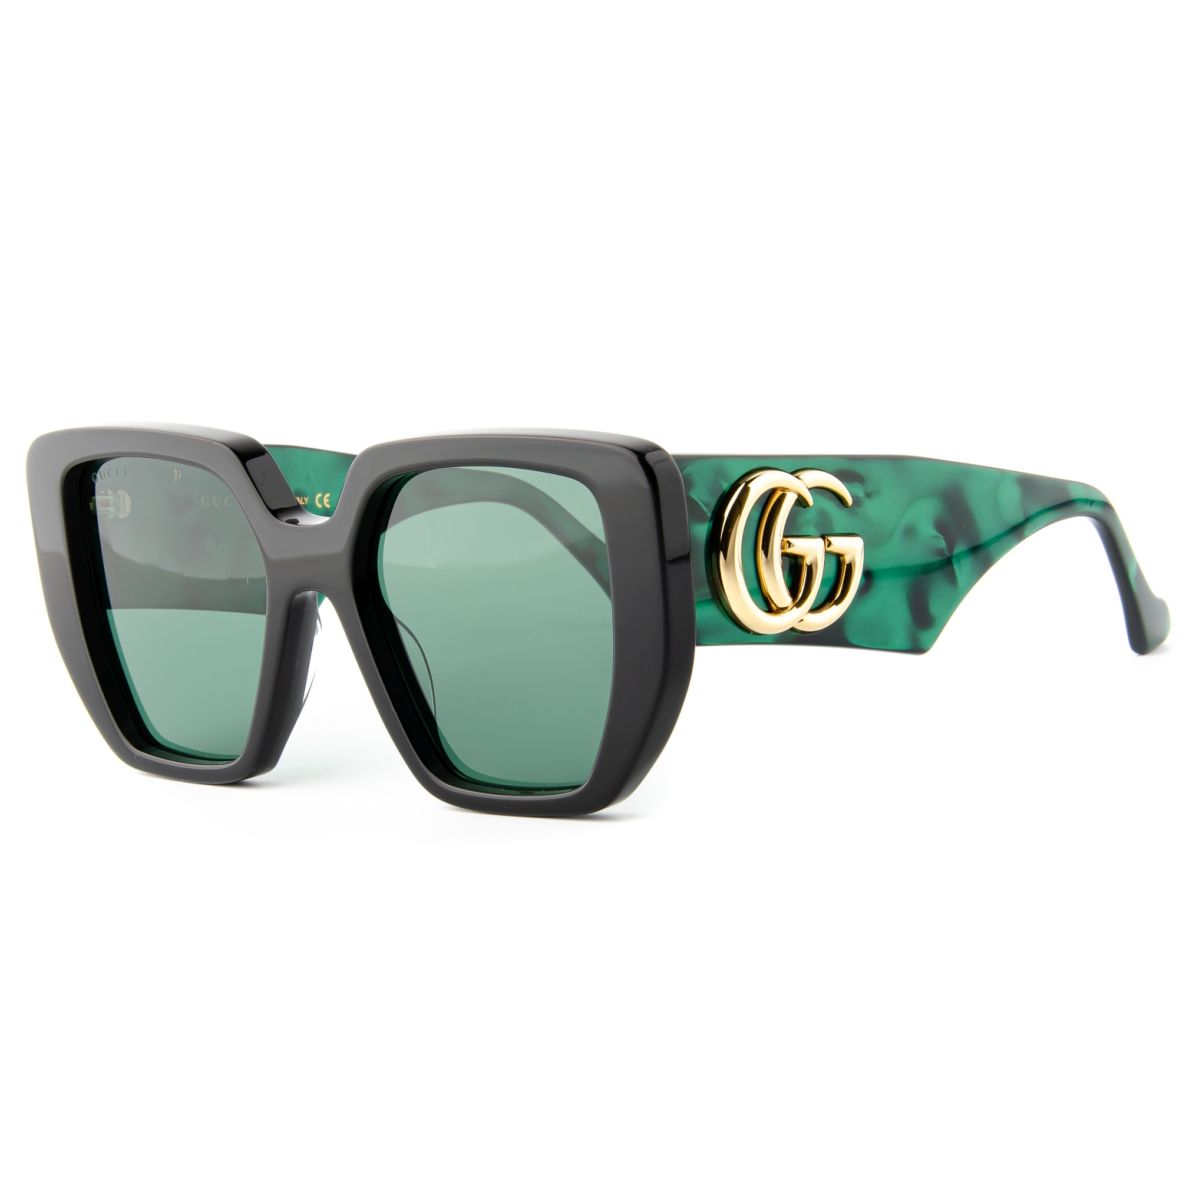 Gucci GG0956 001 54 19 Sunglasses